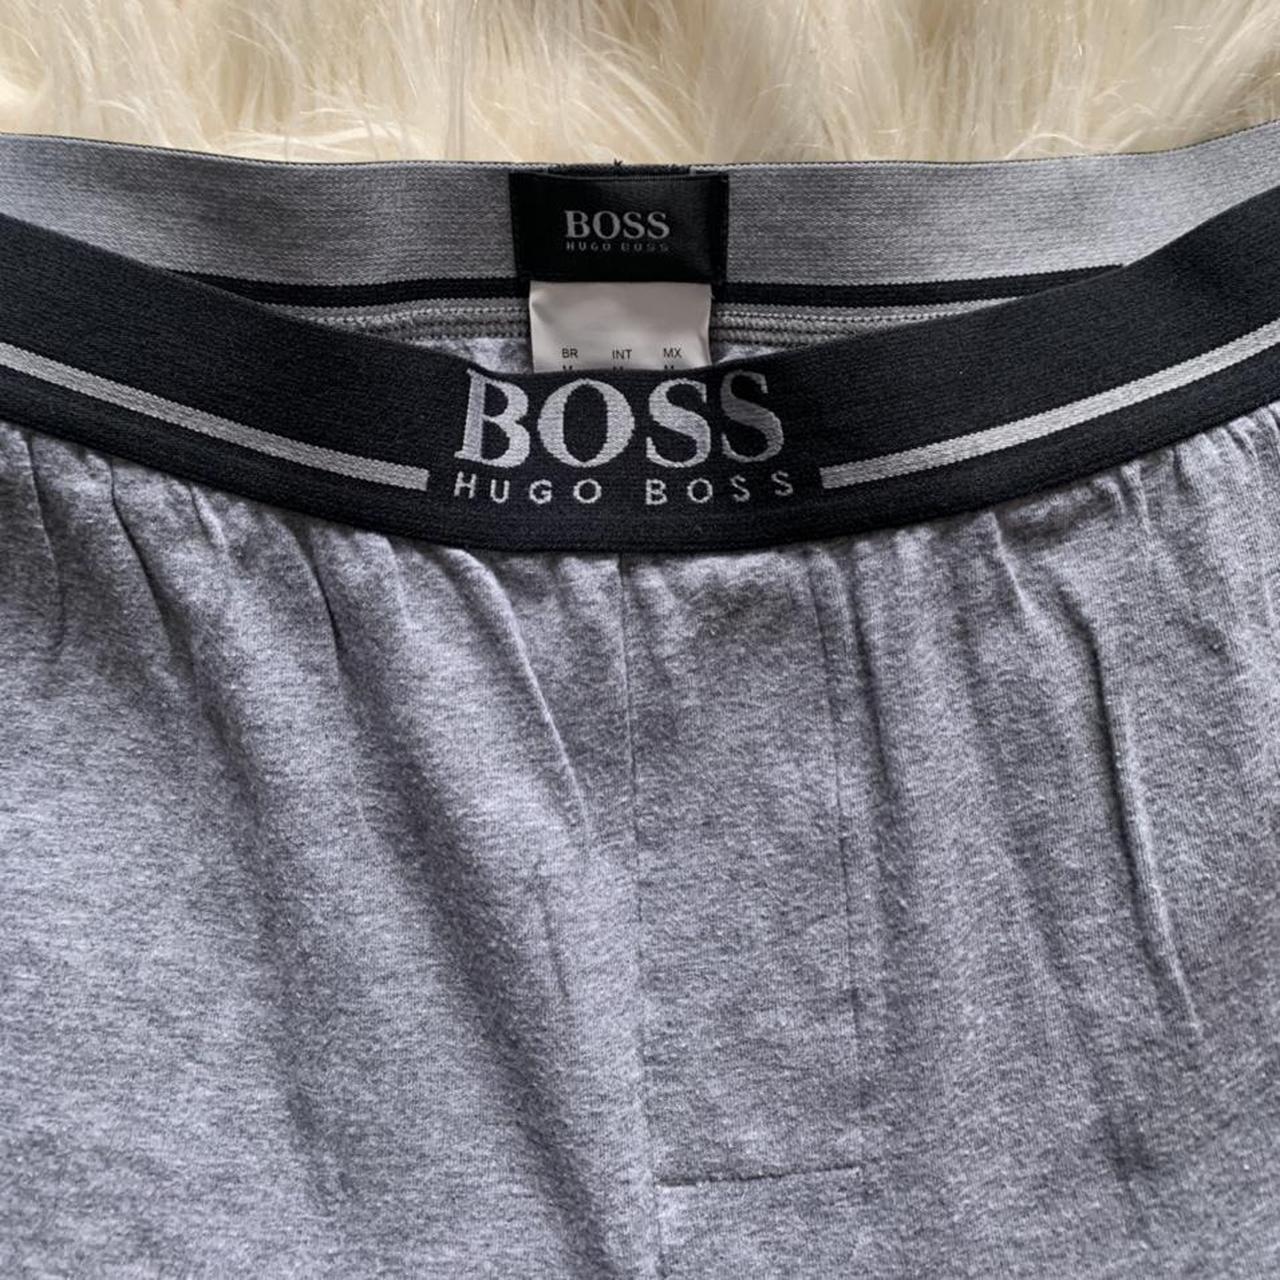 Hugo Boss men’s pyjama bottoms. Worn once.... - Depop